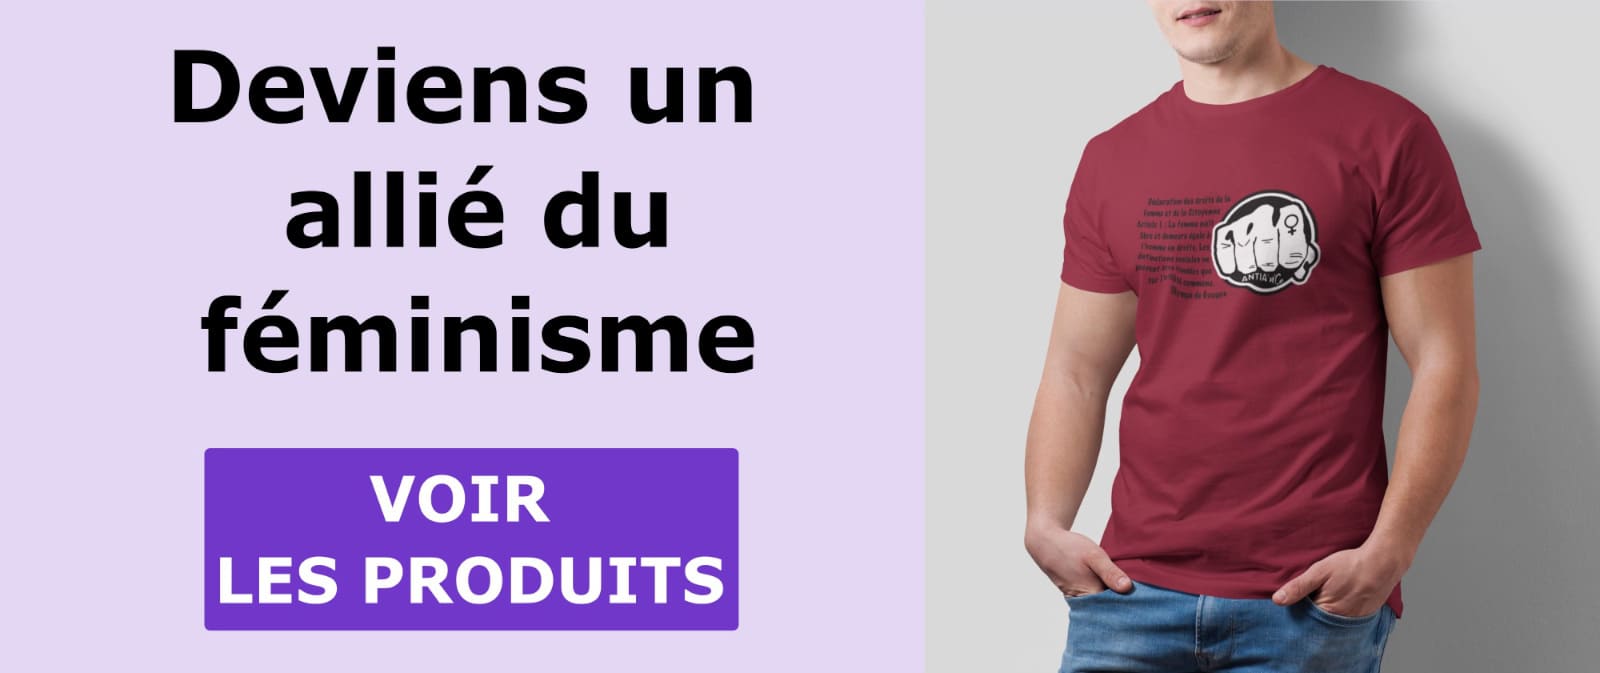 tee shirts feministe pour les hommes